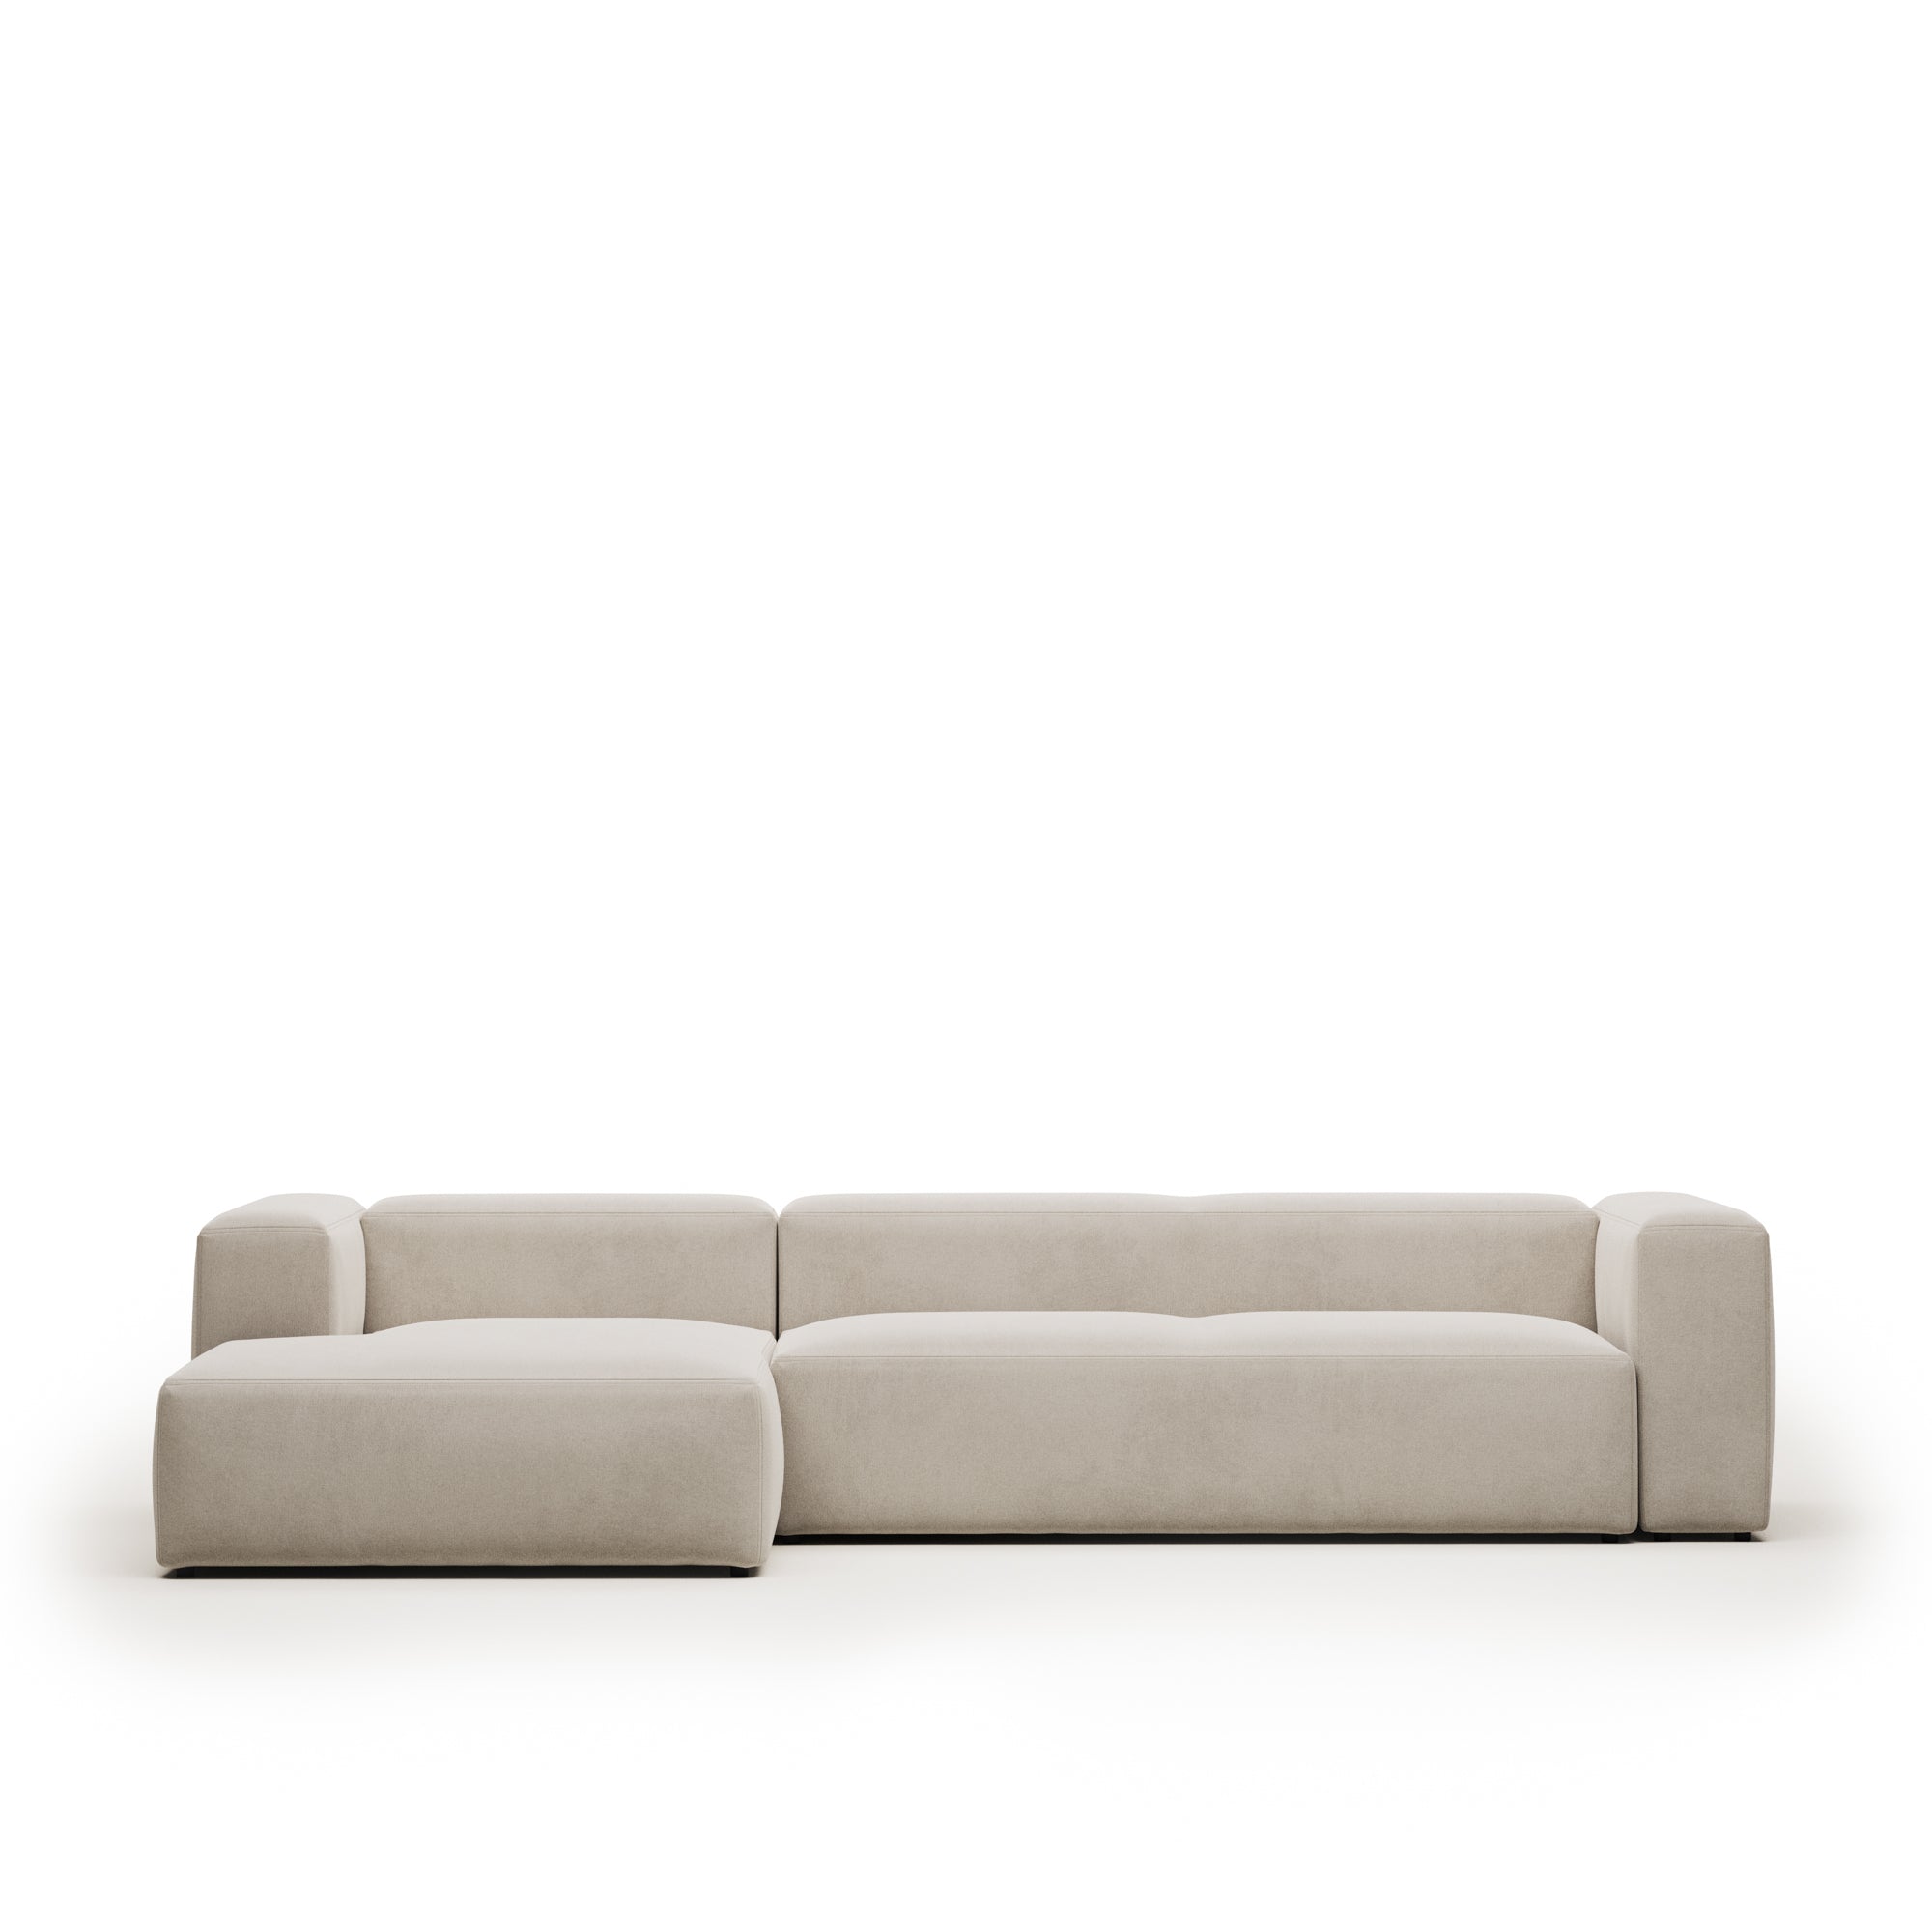 Blok 4 személyes kanapé bézs színben, 330 cm, bal oldali fekvőfotellel